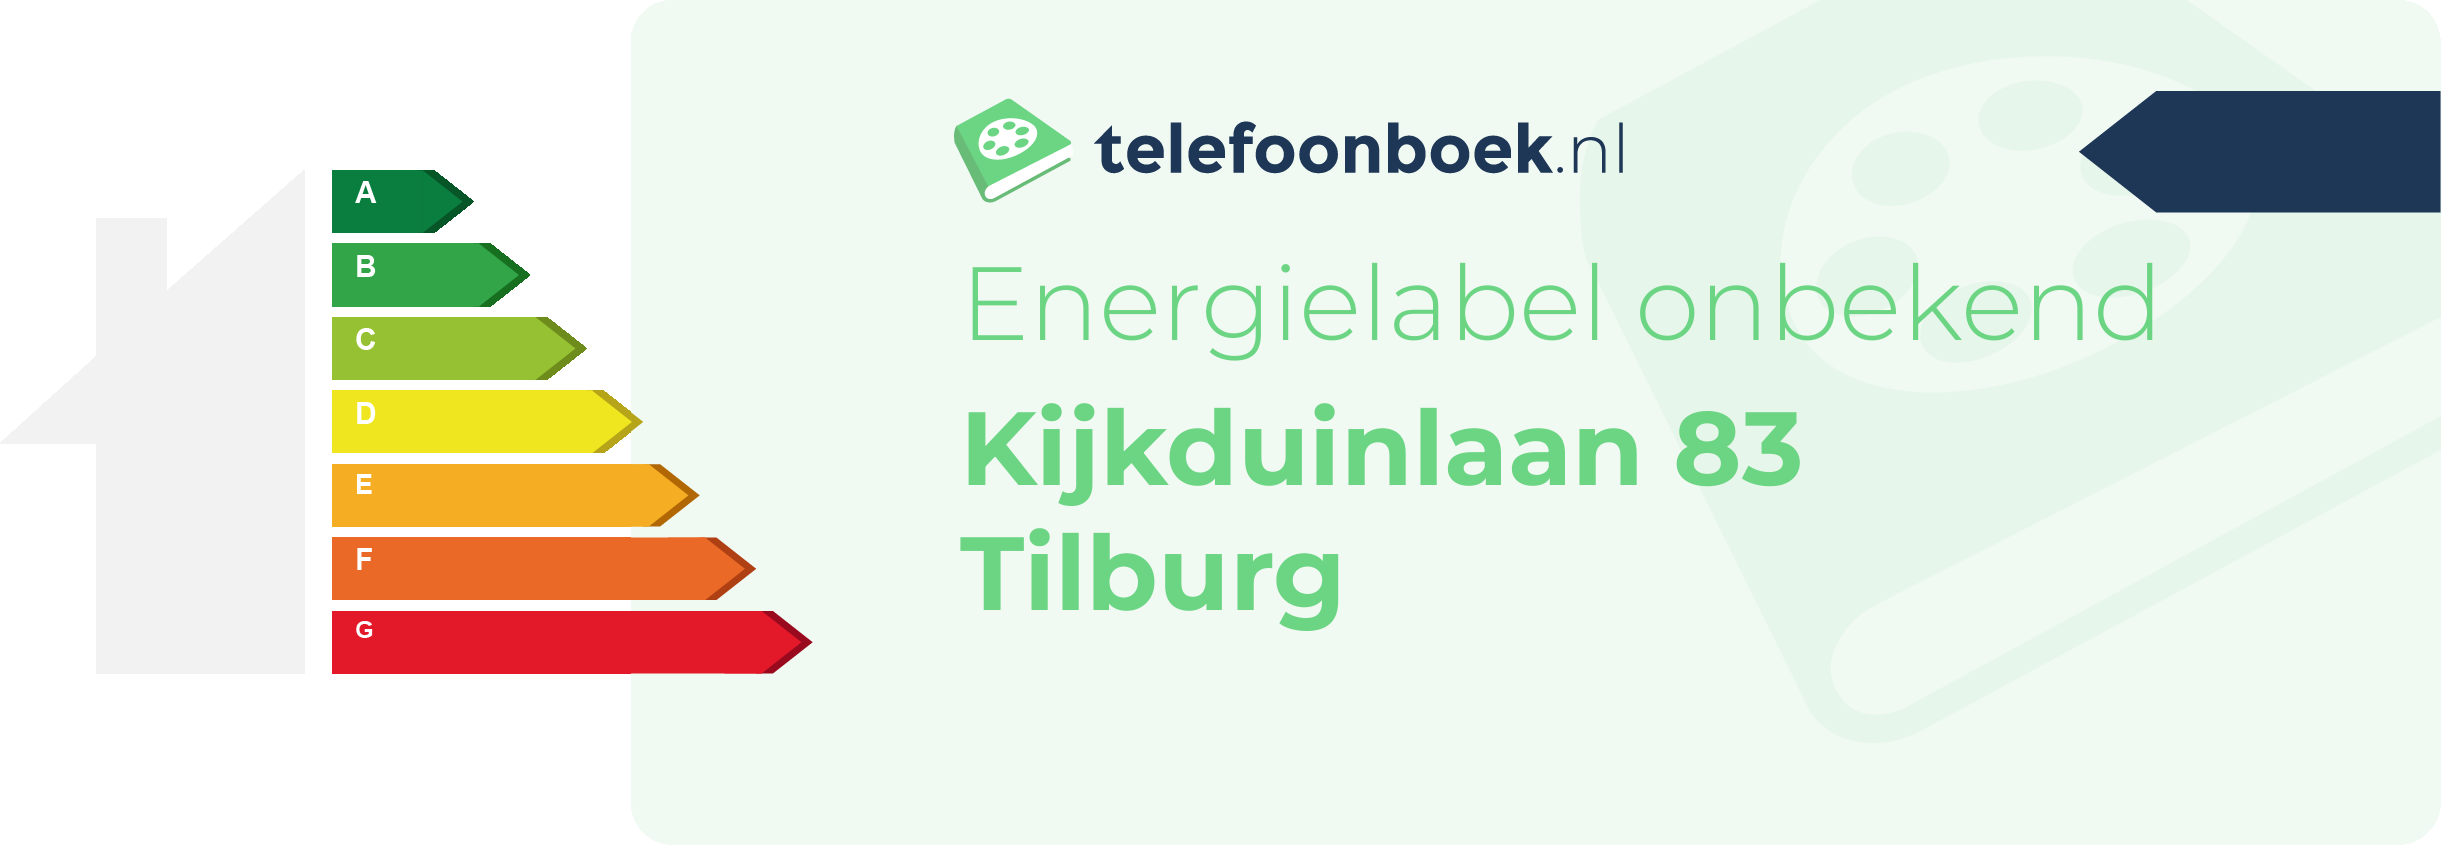 Energielabel Kijkduinlaan 83 Tilburg